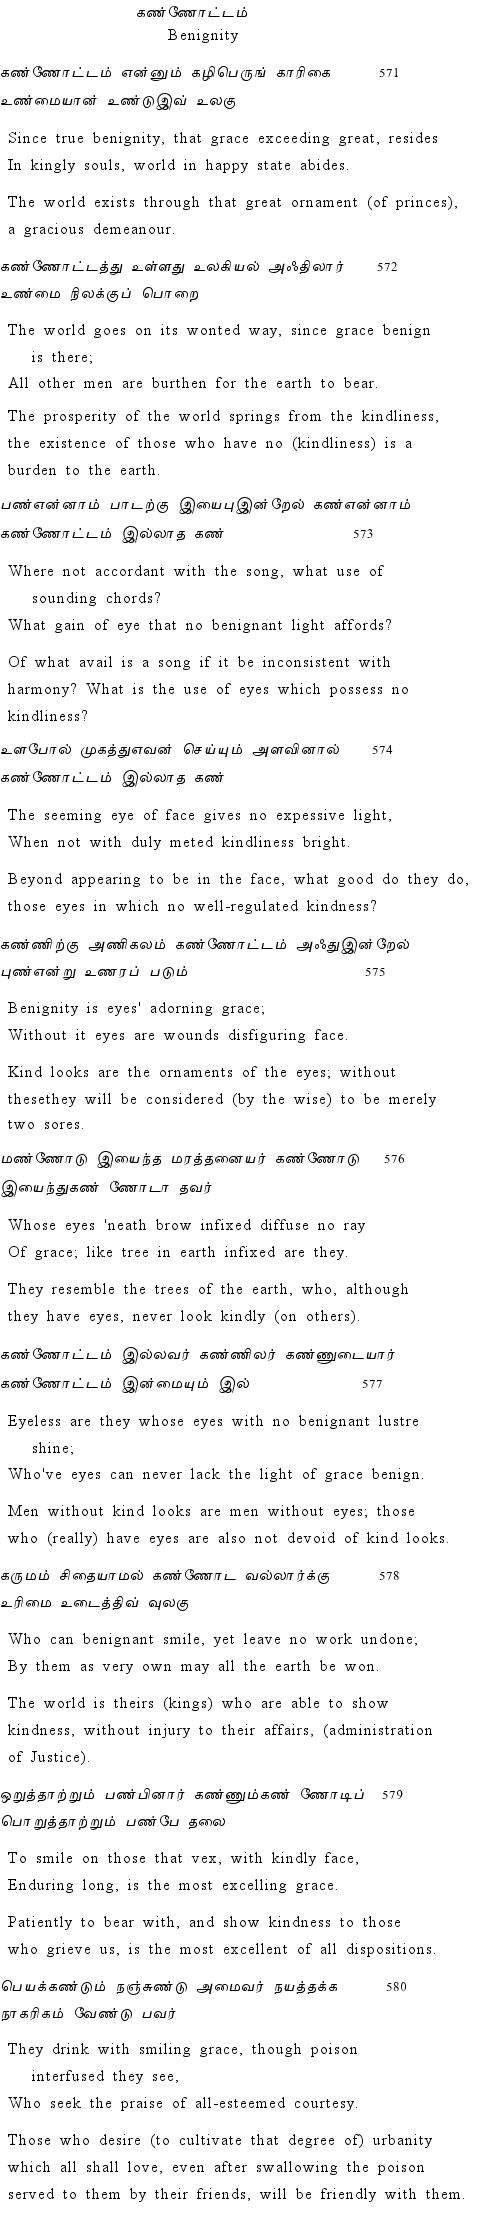 Text of Adhikaram 58